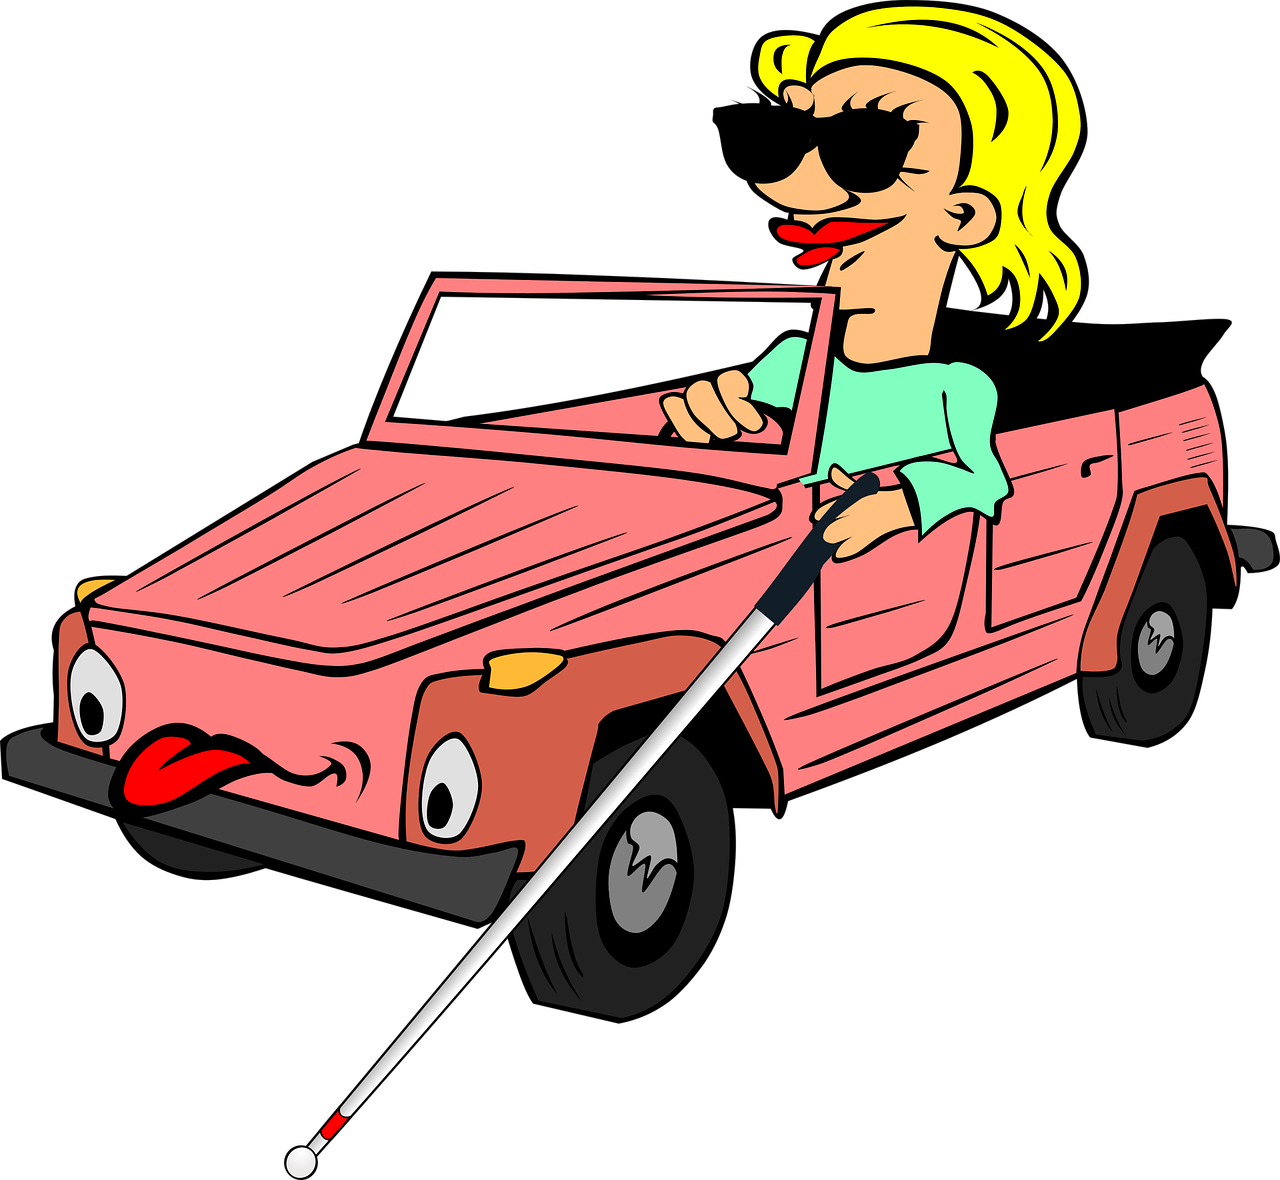 Animace zobrazující ženu sedící v autě, která má sluneční brýle a v ruce drží dlouhou bílou hůl, kterou zjišťuje cestu před sebou